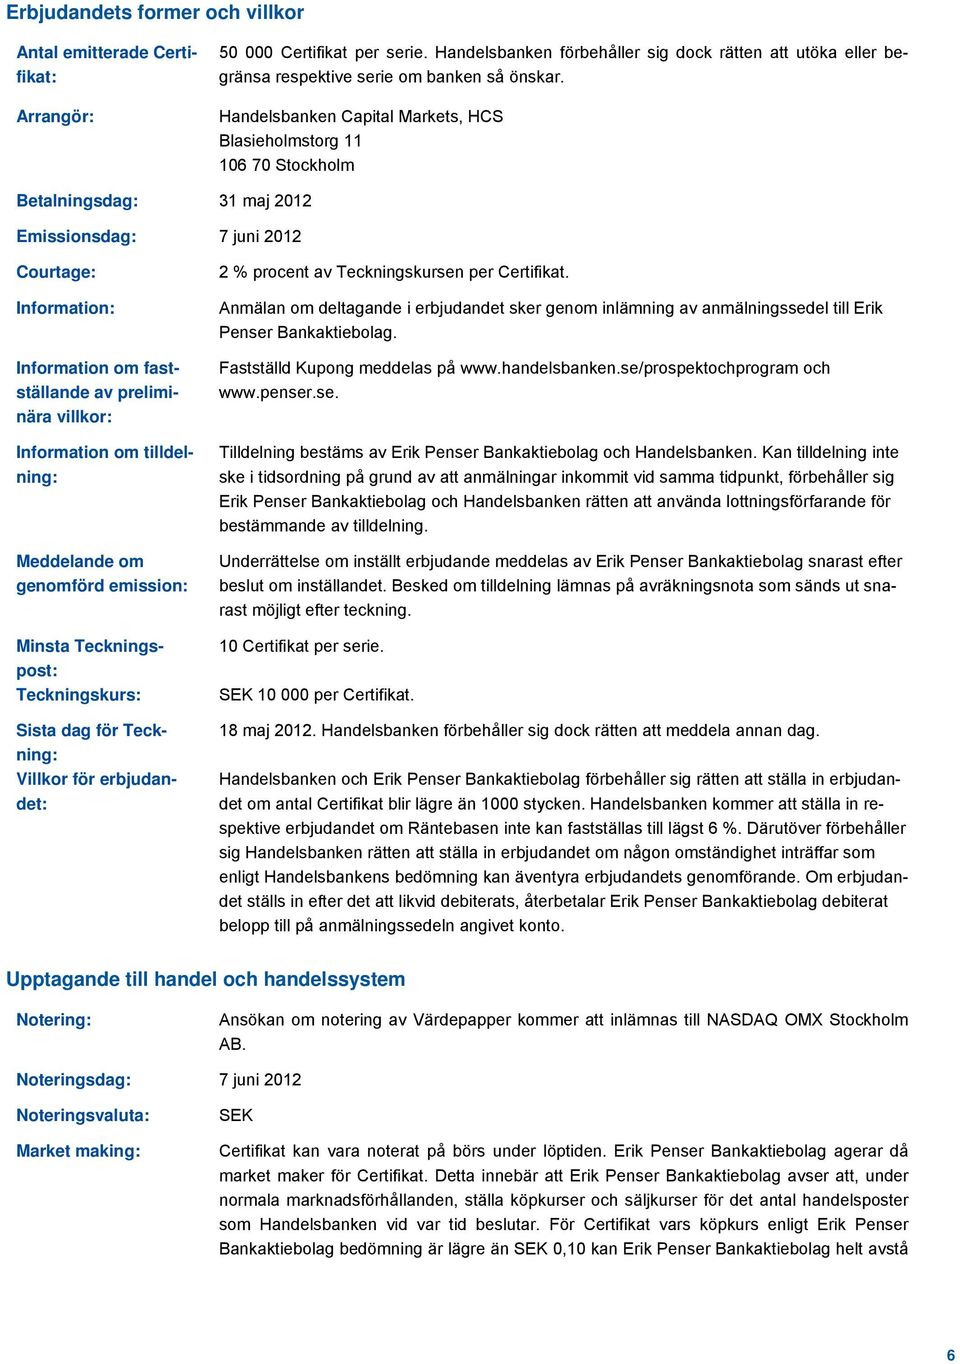 Handelsbanken Capital Markets, HCS Blasieholmstorg 11 106 70 Stockholm Betalningsdag: 31 maj 2012 Emissionsdag: 7 juni 2012 Courtage: Information: Information om fastställande av preliminära villkor: